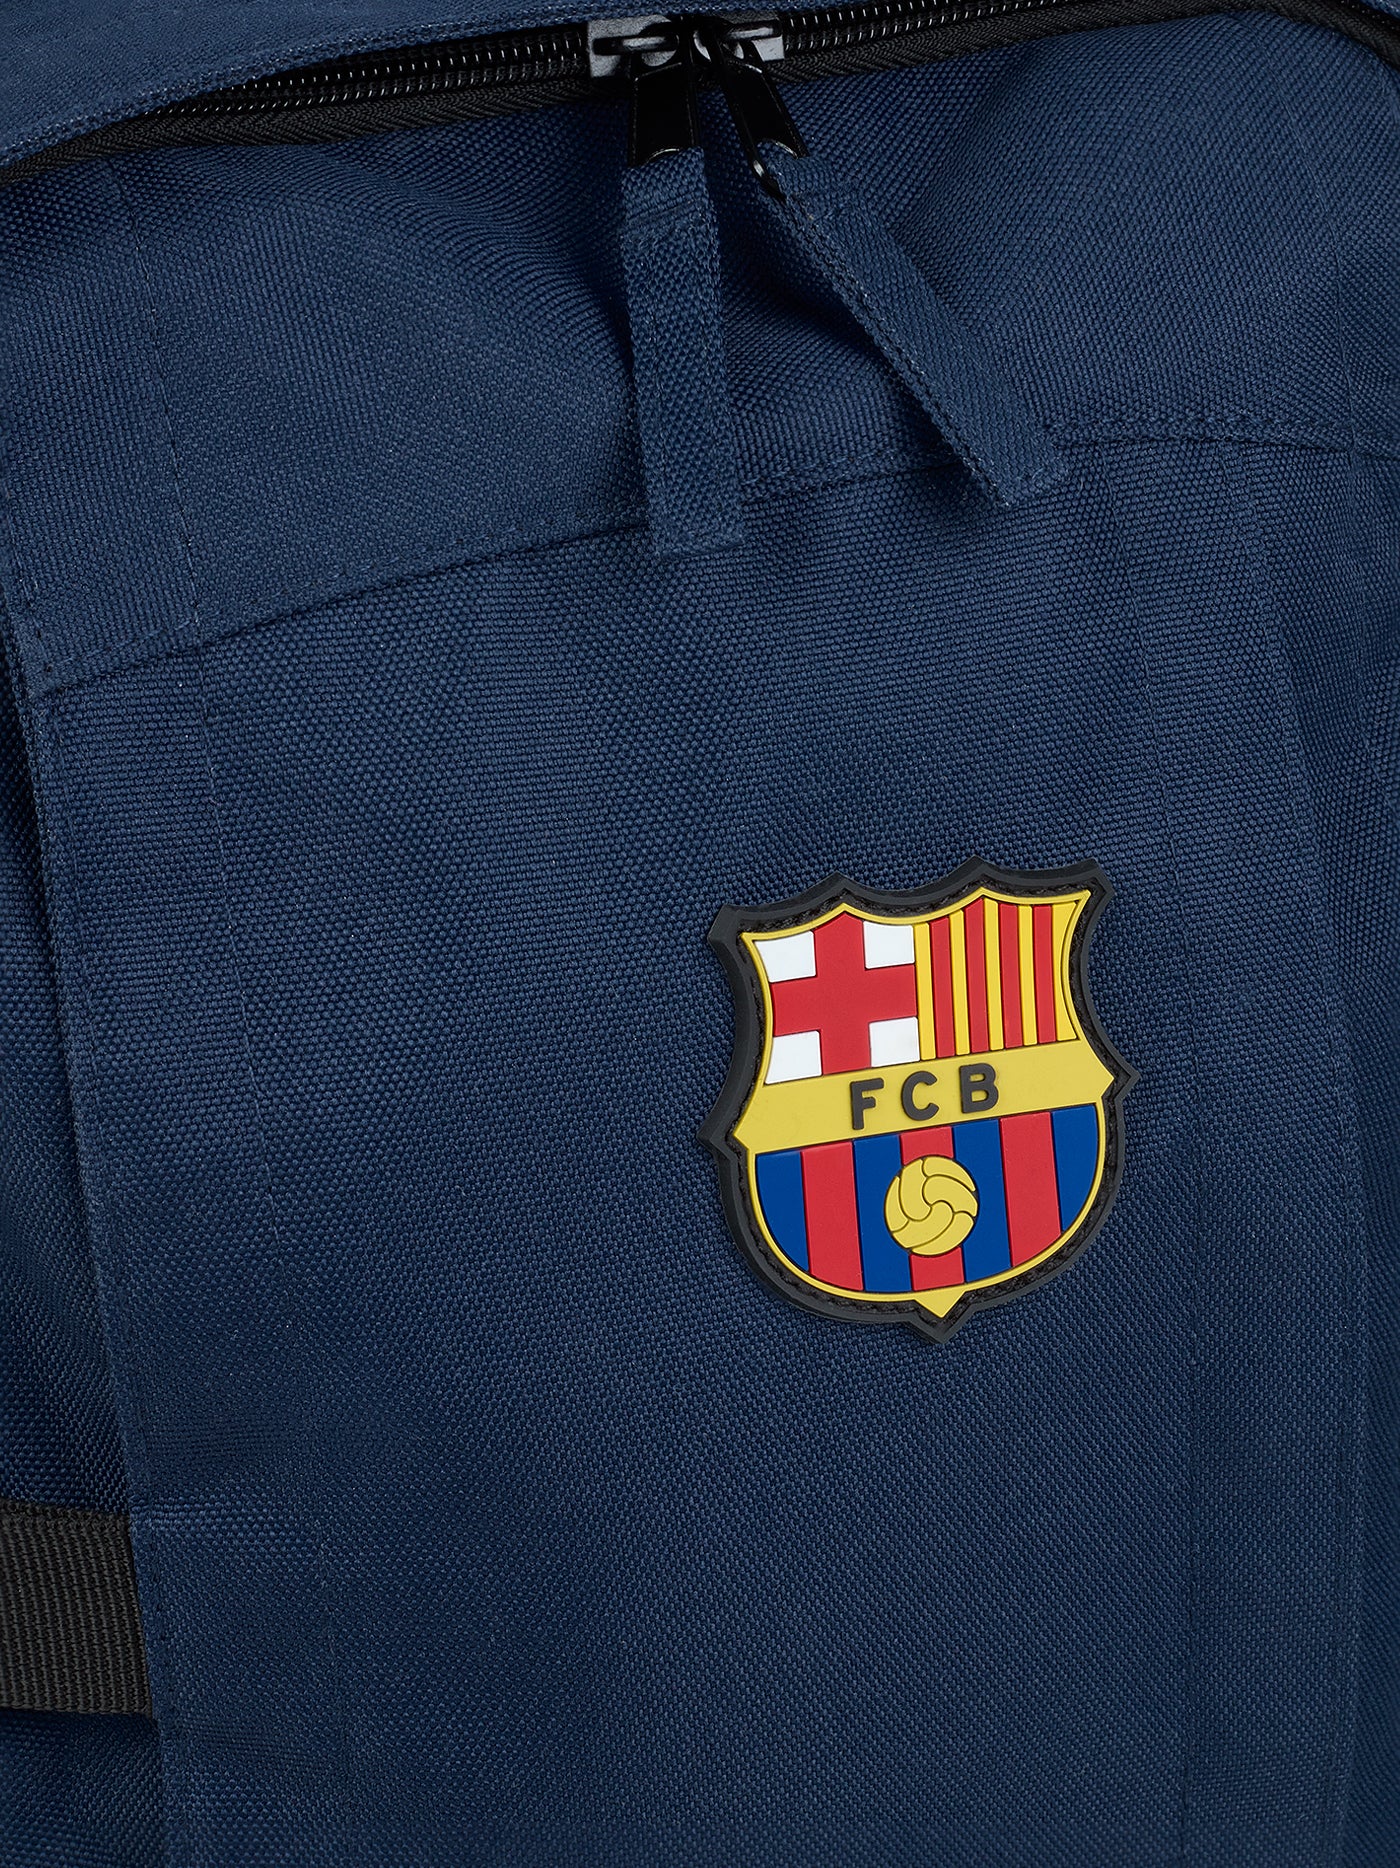 Backpack FC Barcelona Navy blue